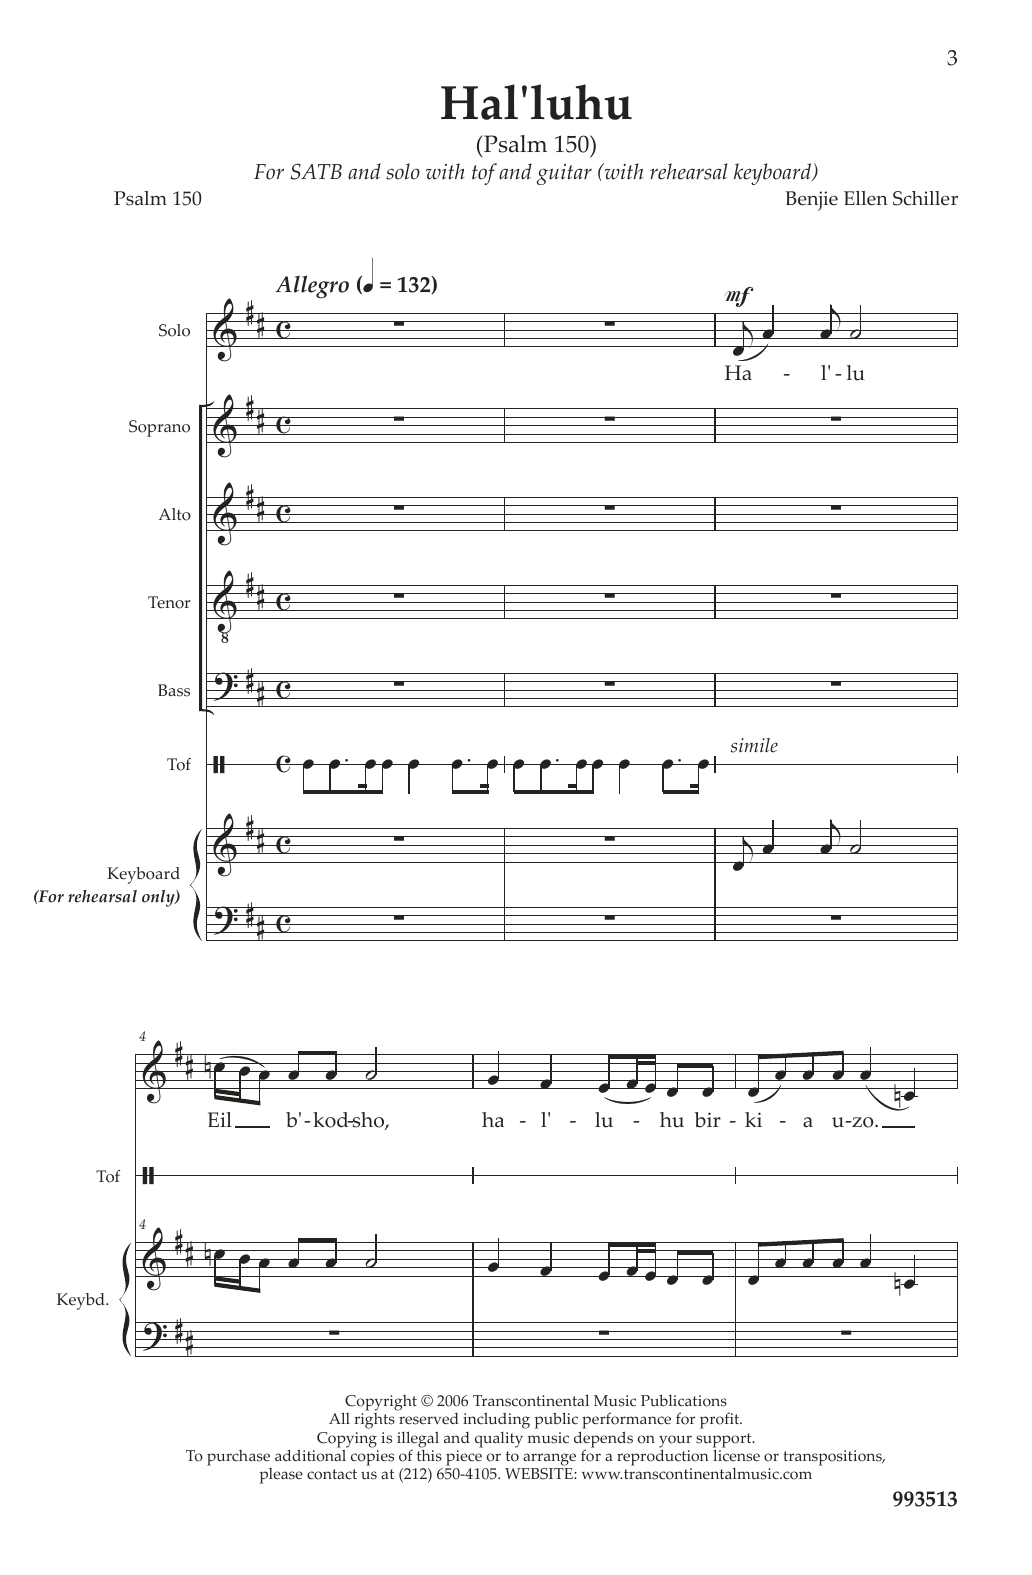 Download Benjie-Ellen Schiller Hal'luhu (Psalm 150) Sheet Music